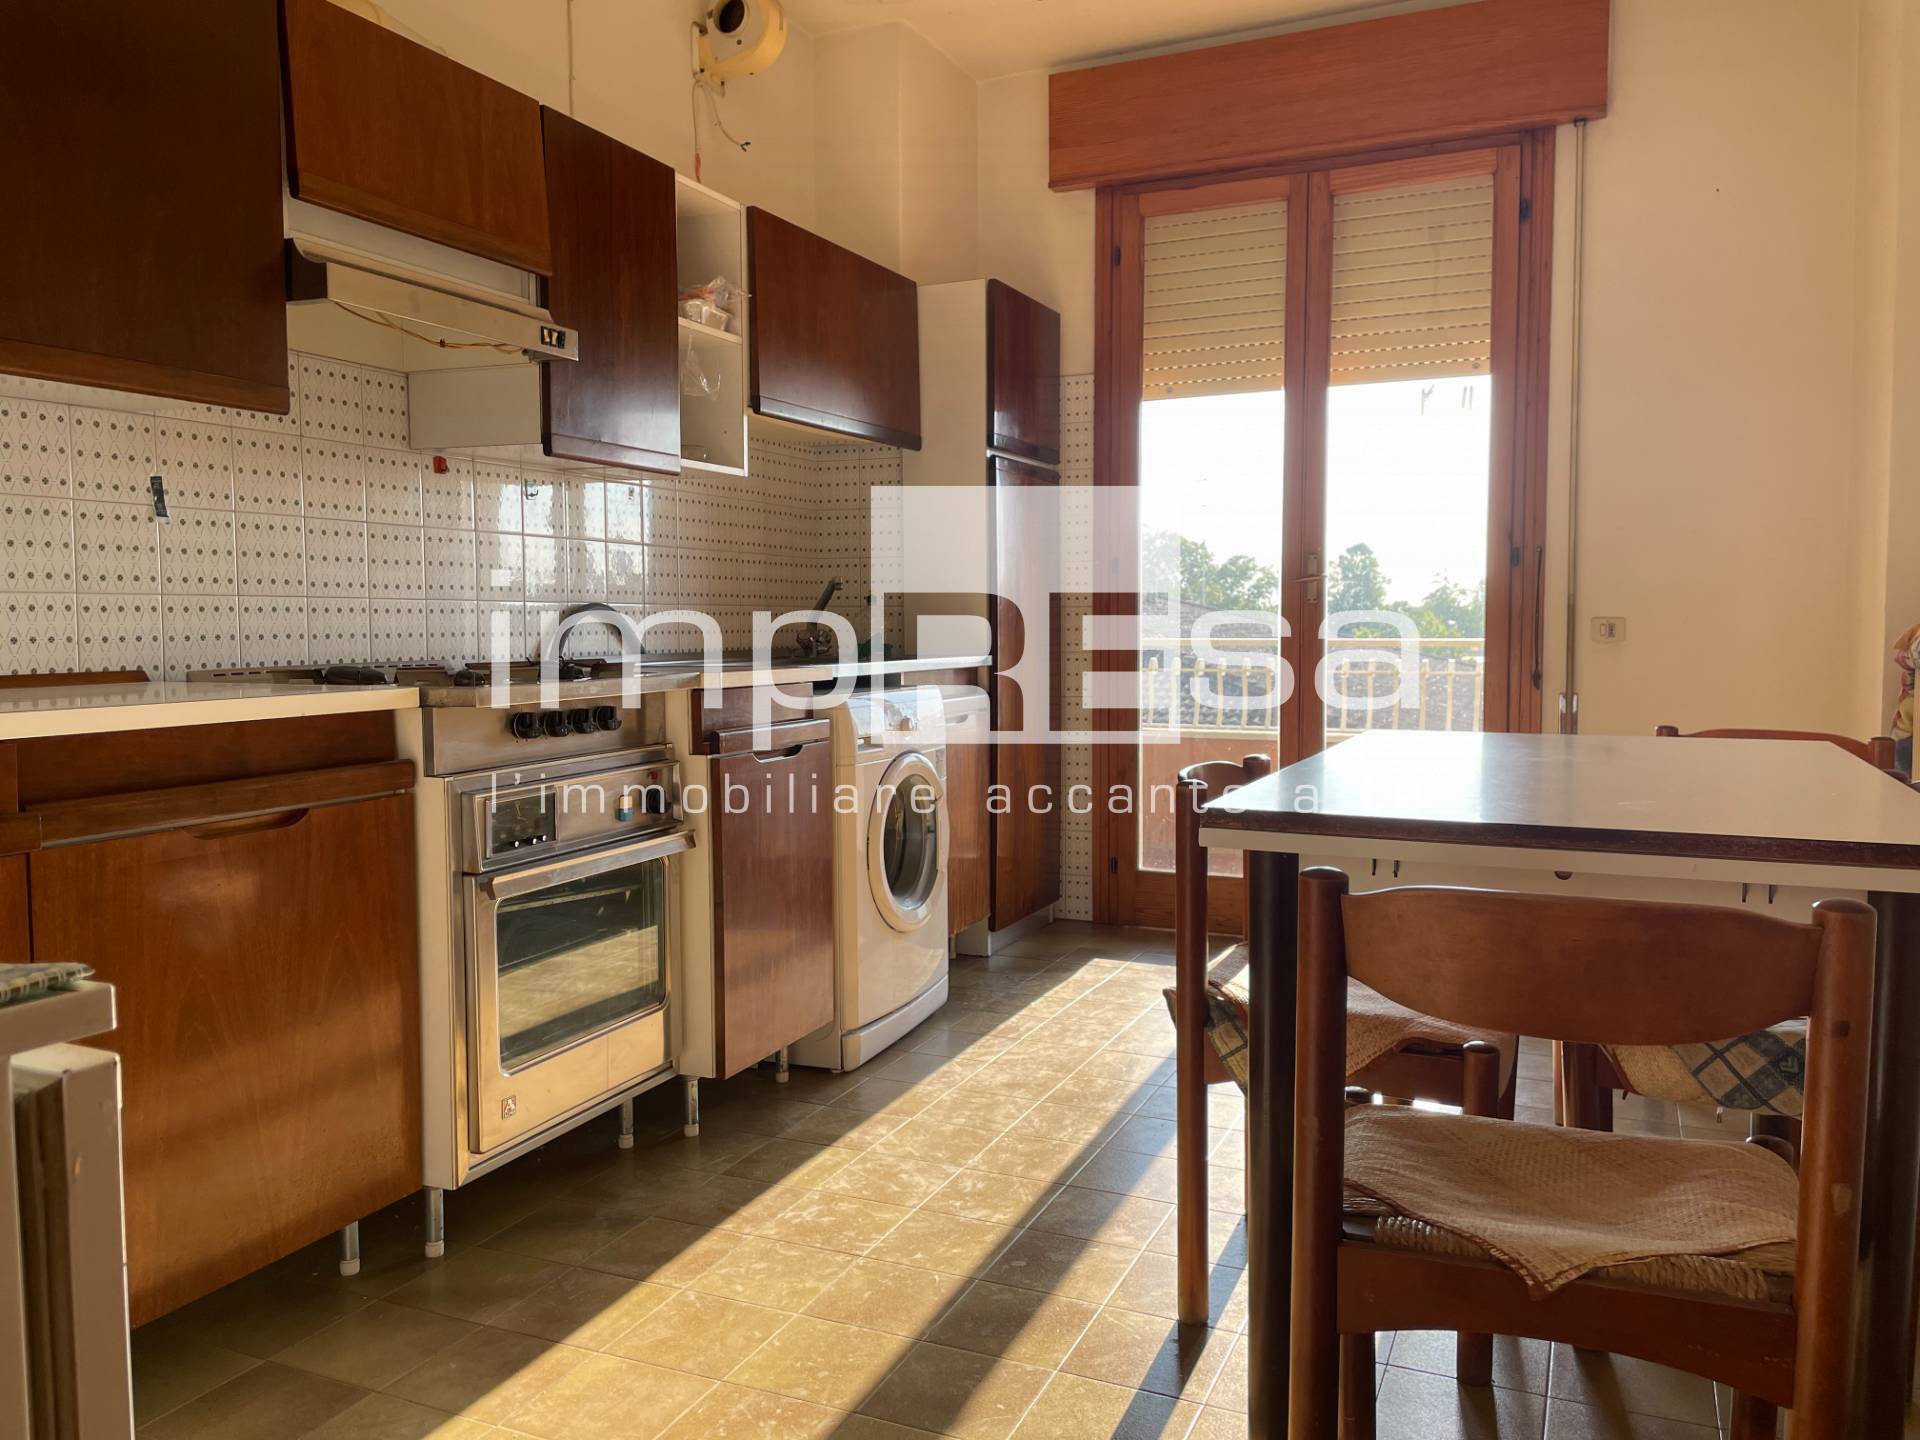 Appartamento in vendita a Casale sul Sile, 5 locali, prezzo € 90.000 | CambioCasa.it